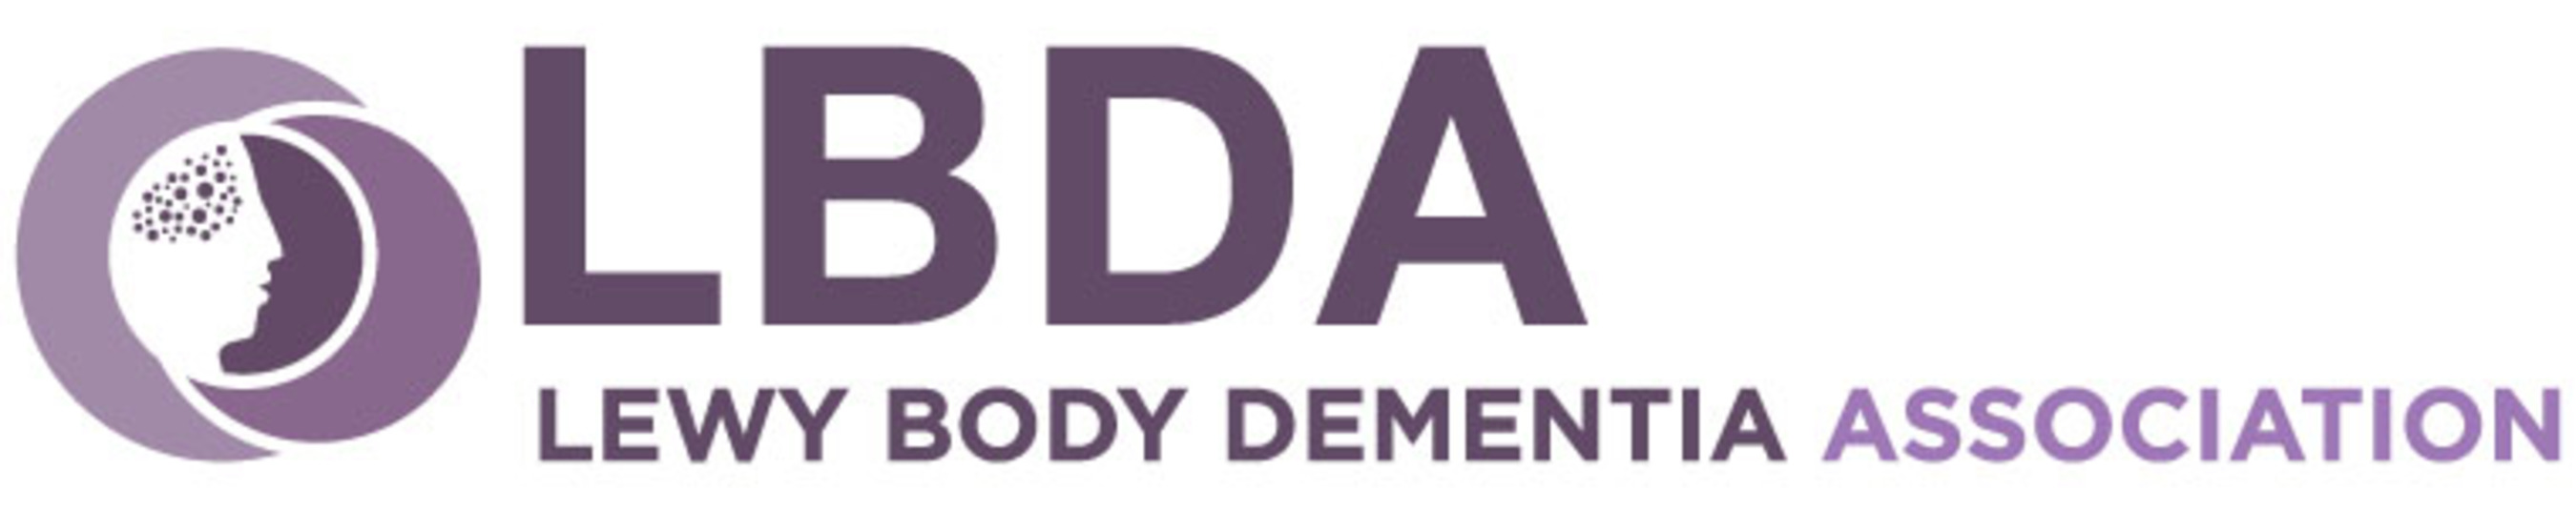 Lewy Body Dementia Association Logo